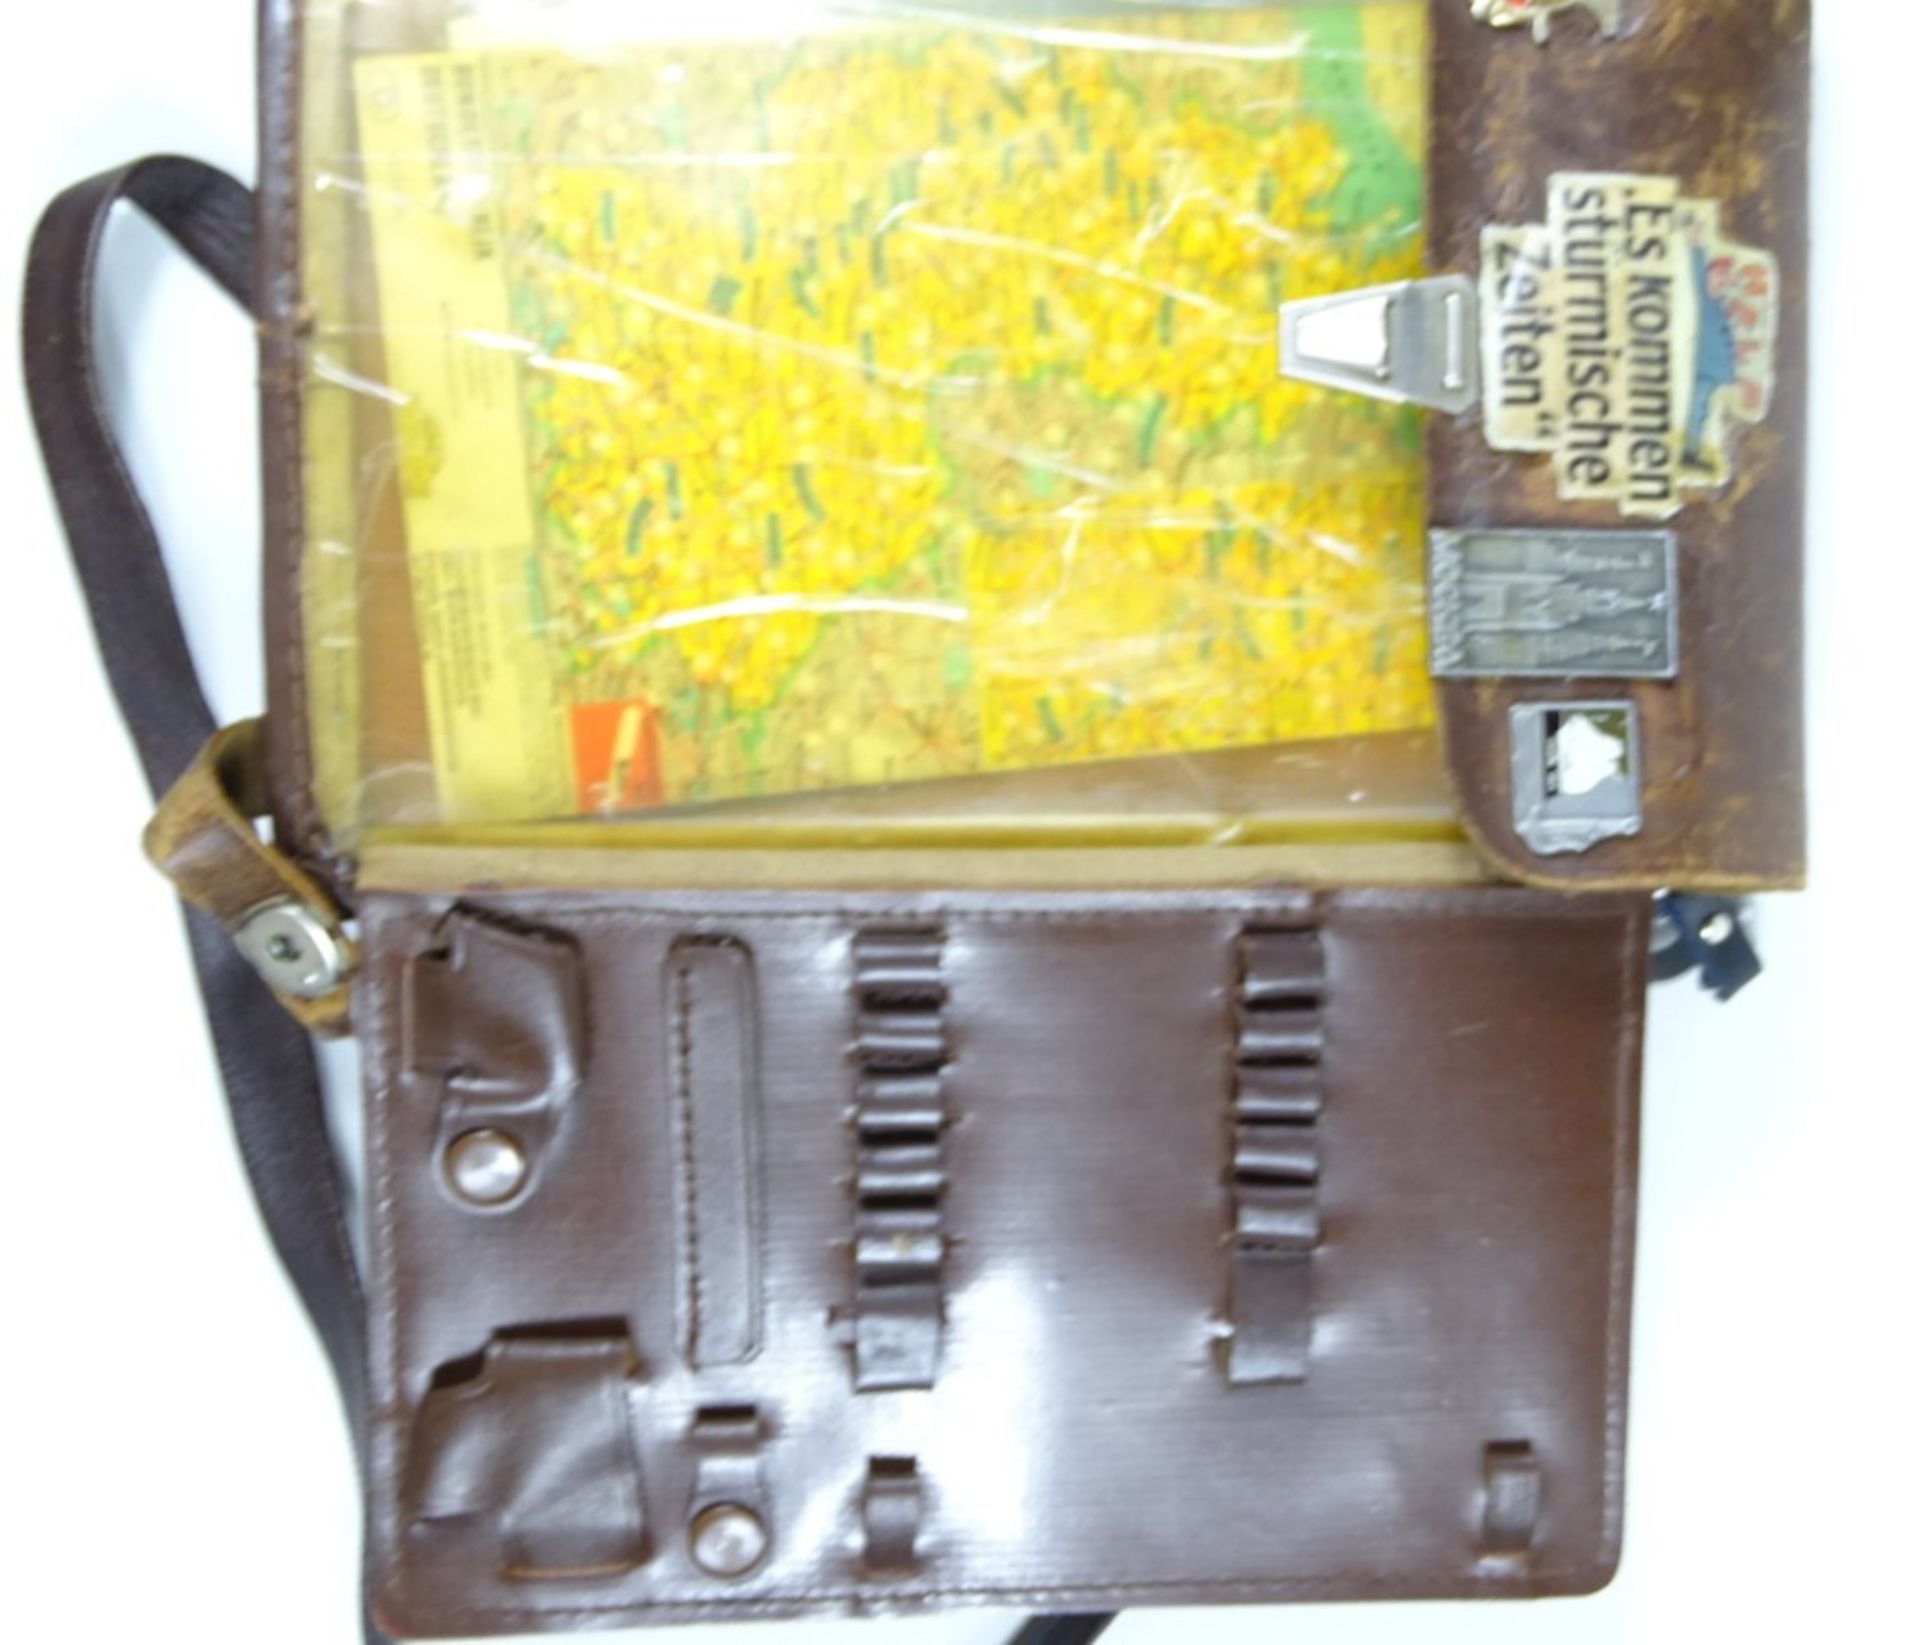 Kartentasche, Leder, mit diversen Pins und Stickern, 21 x 27,5 cm, Gebrauchsspuren vorhanden - Bild 4 aus 4